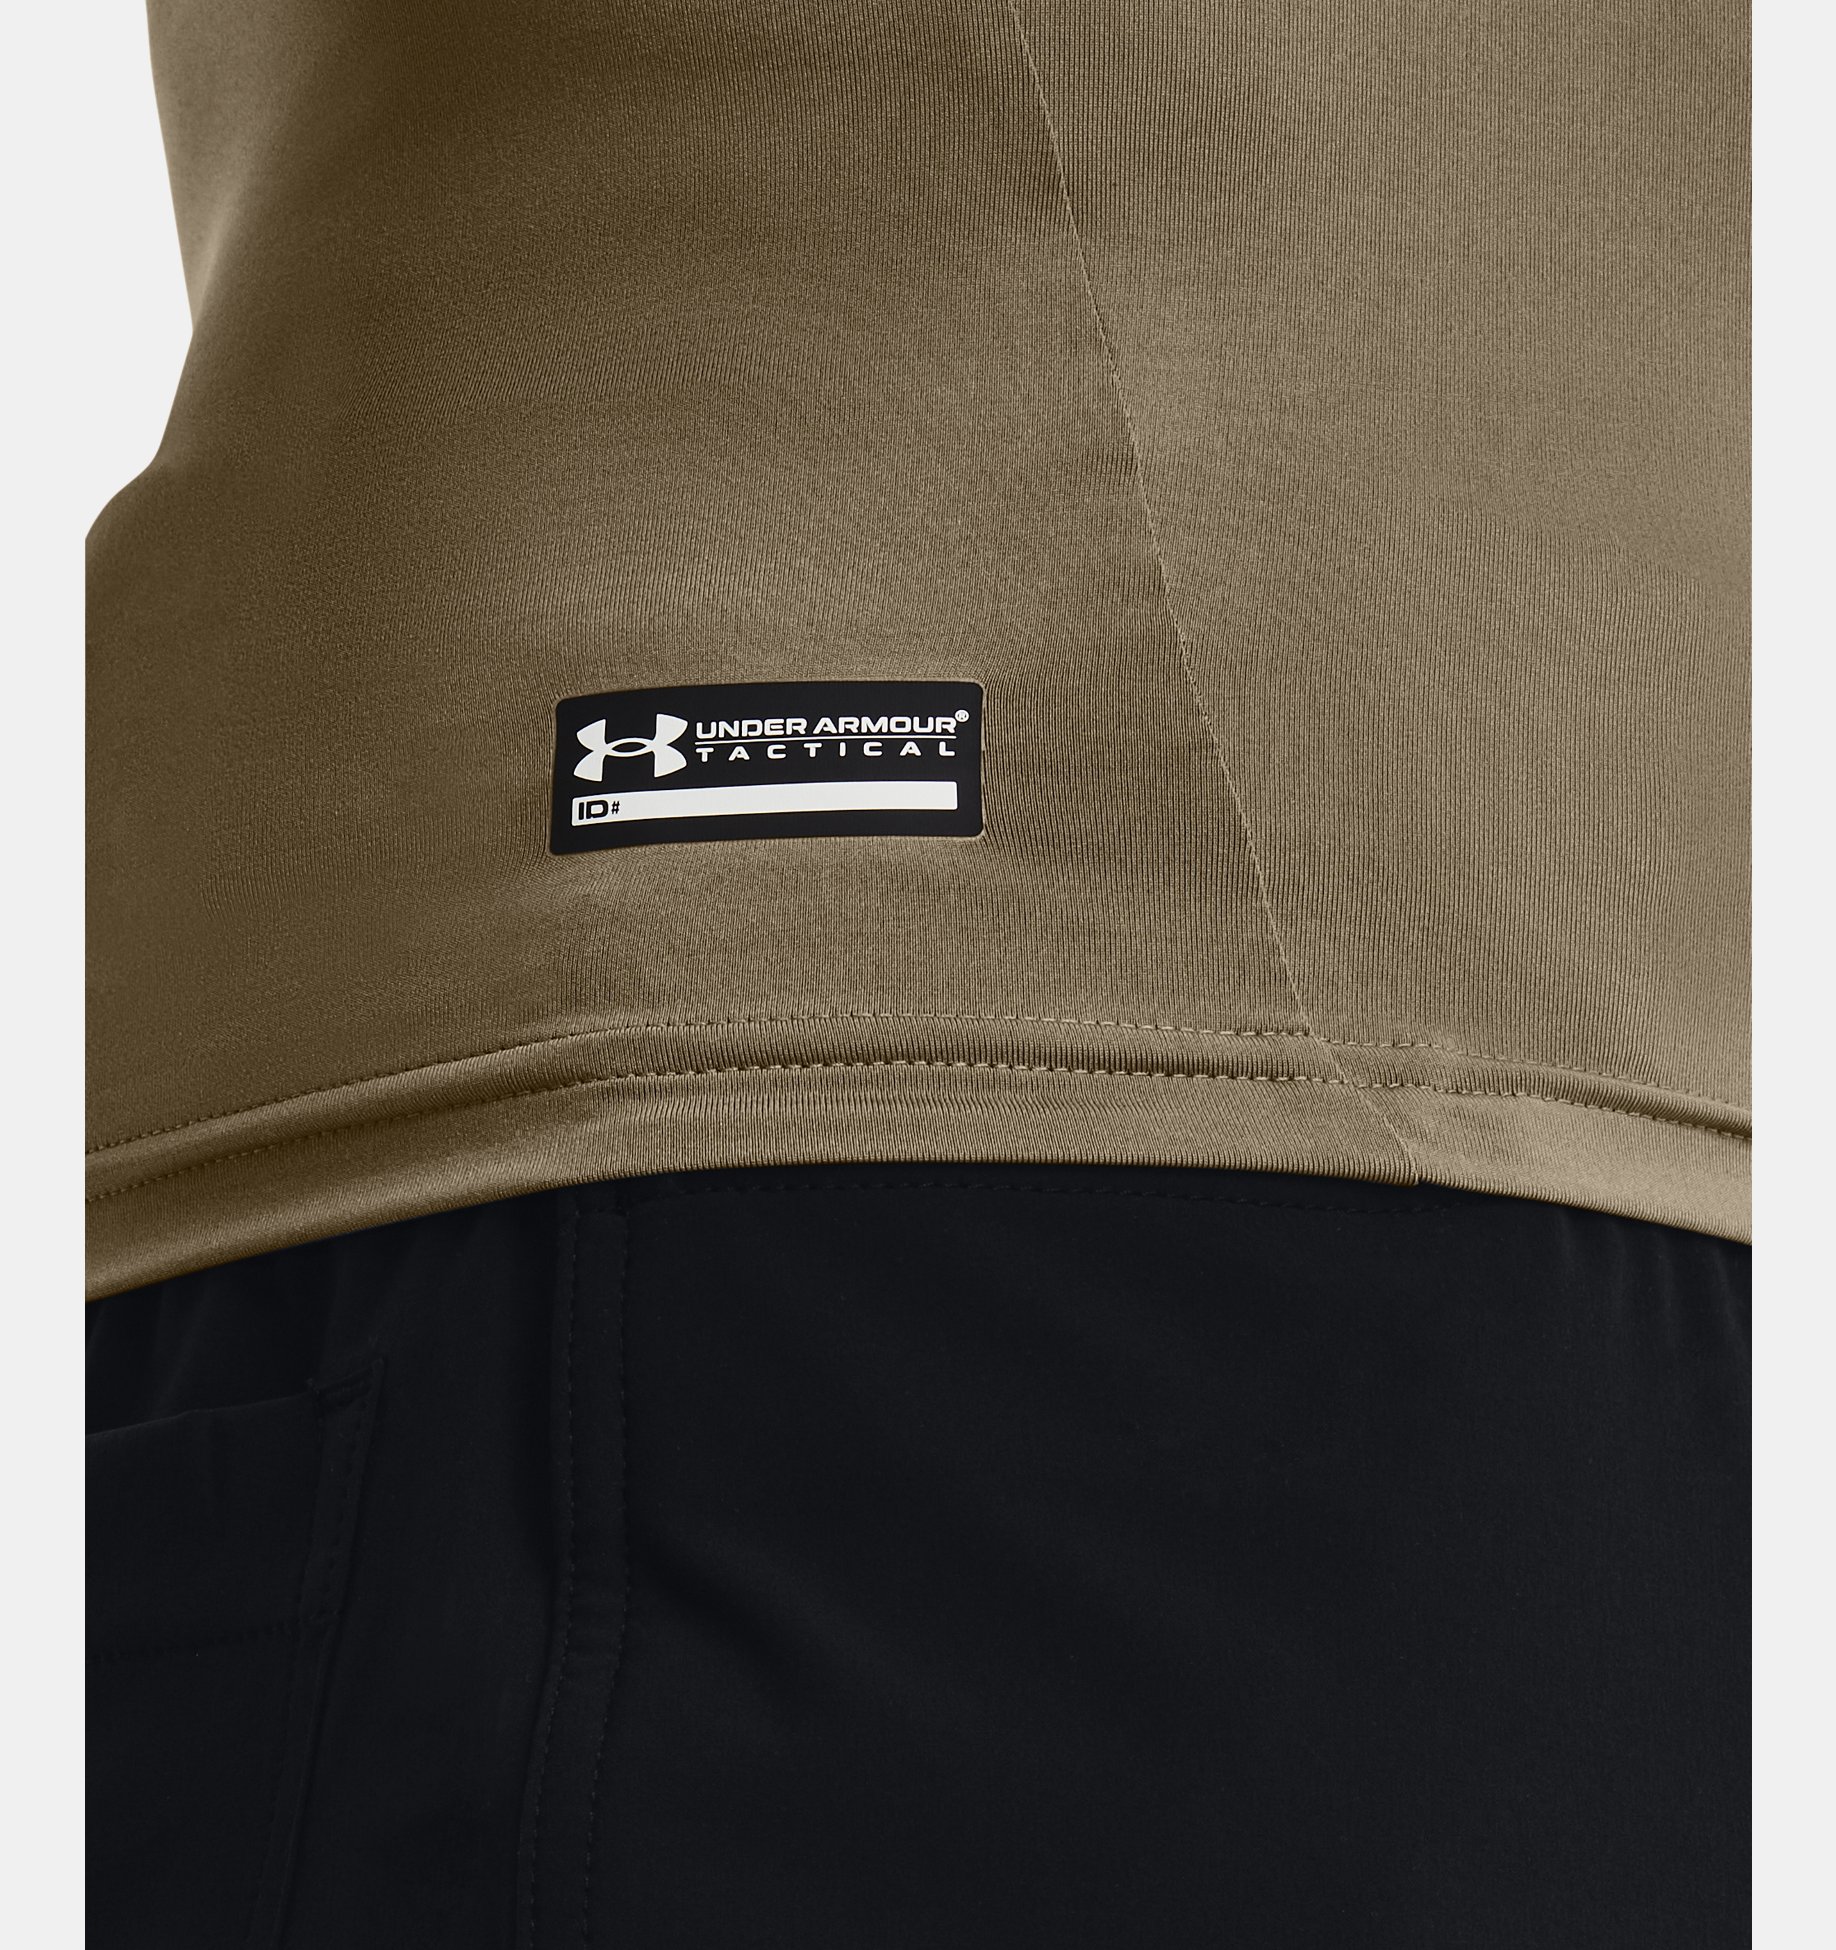 언더아머 Underarmour Mens Tactical HeatGear Compression Short Sleeve T-Shirt